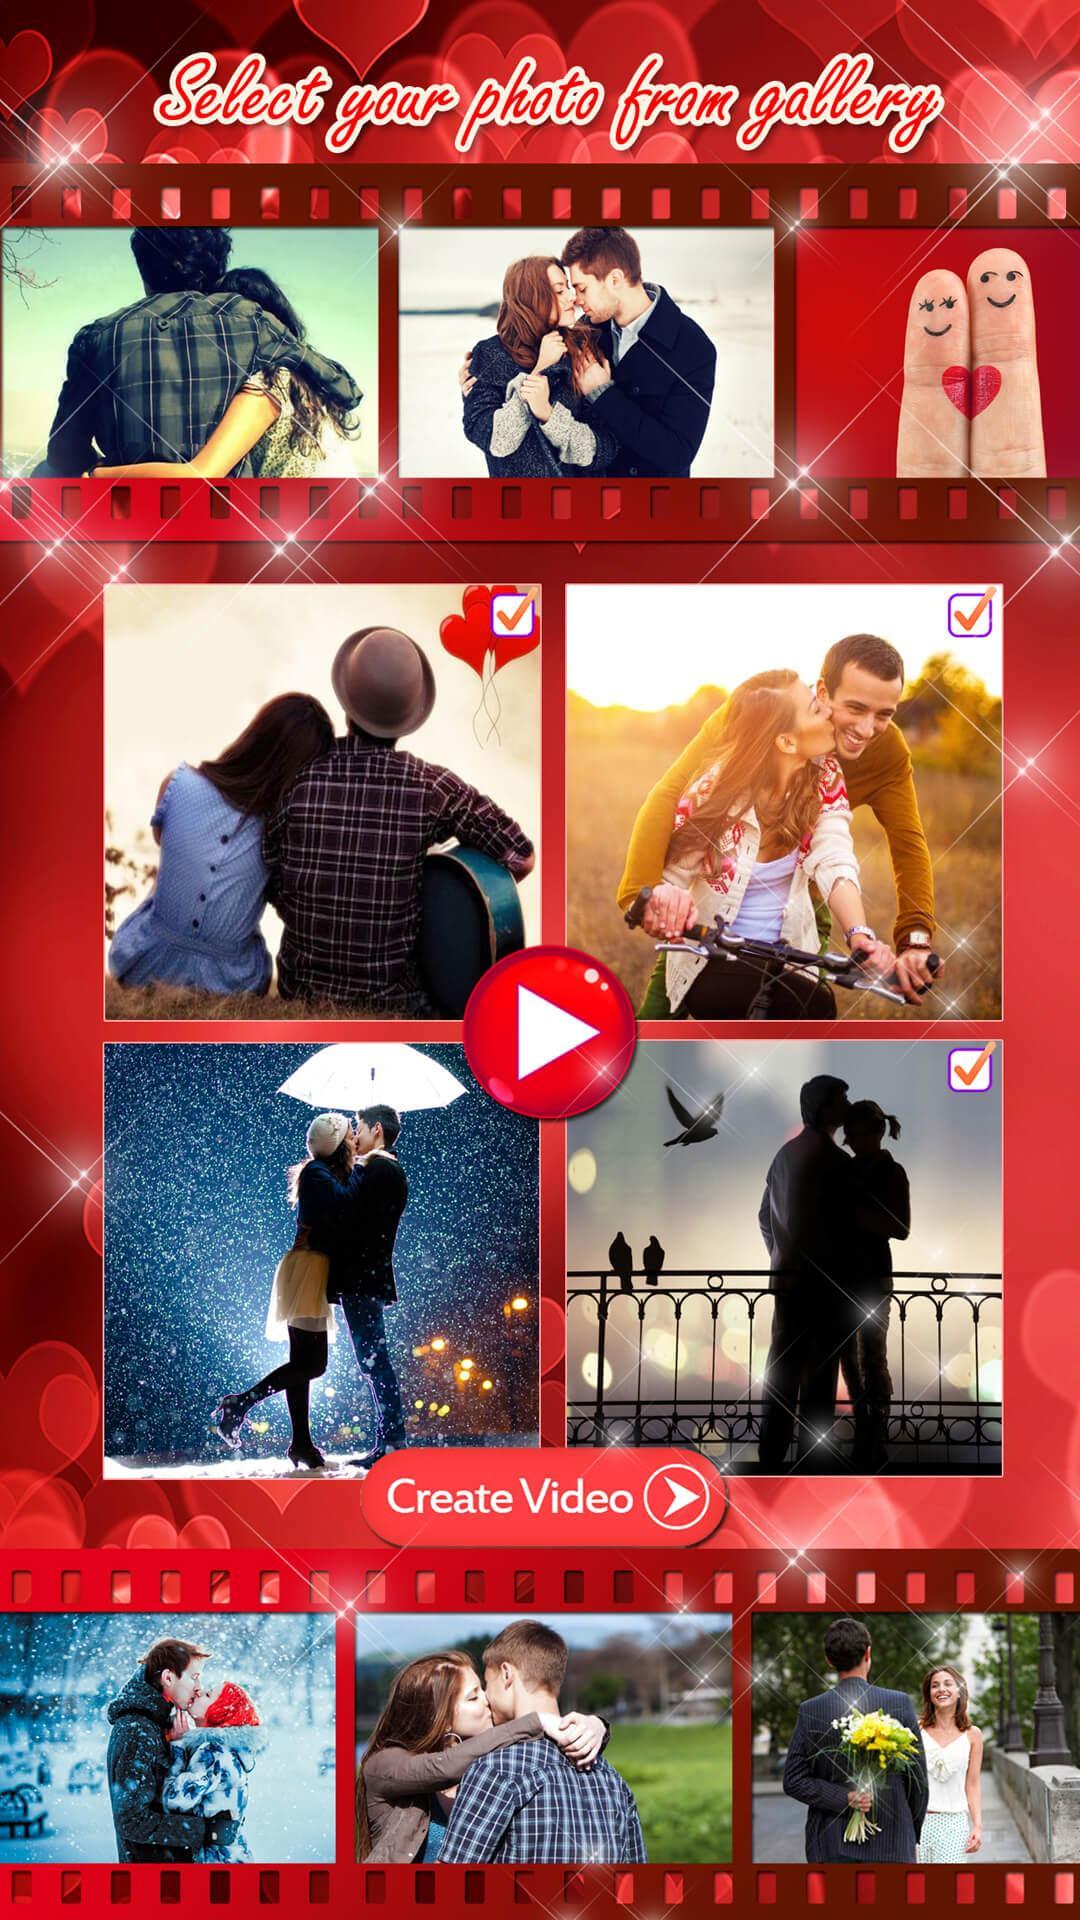 Verwonderend Liefde 💘 Video Maken met Fotos en Muziek for Android - APK Download FL-88